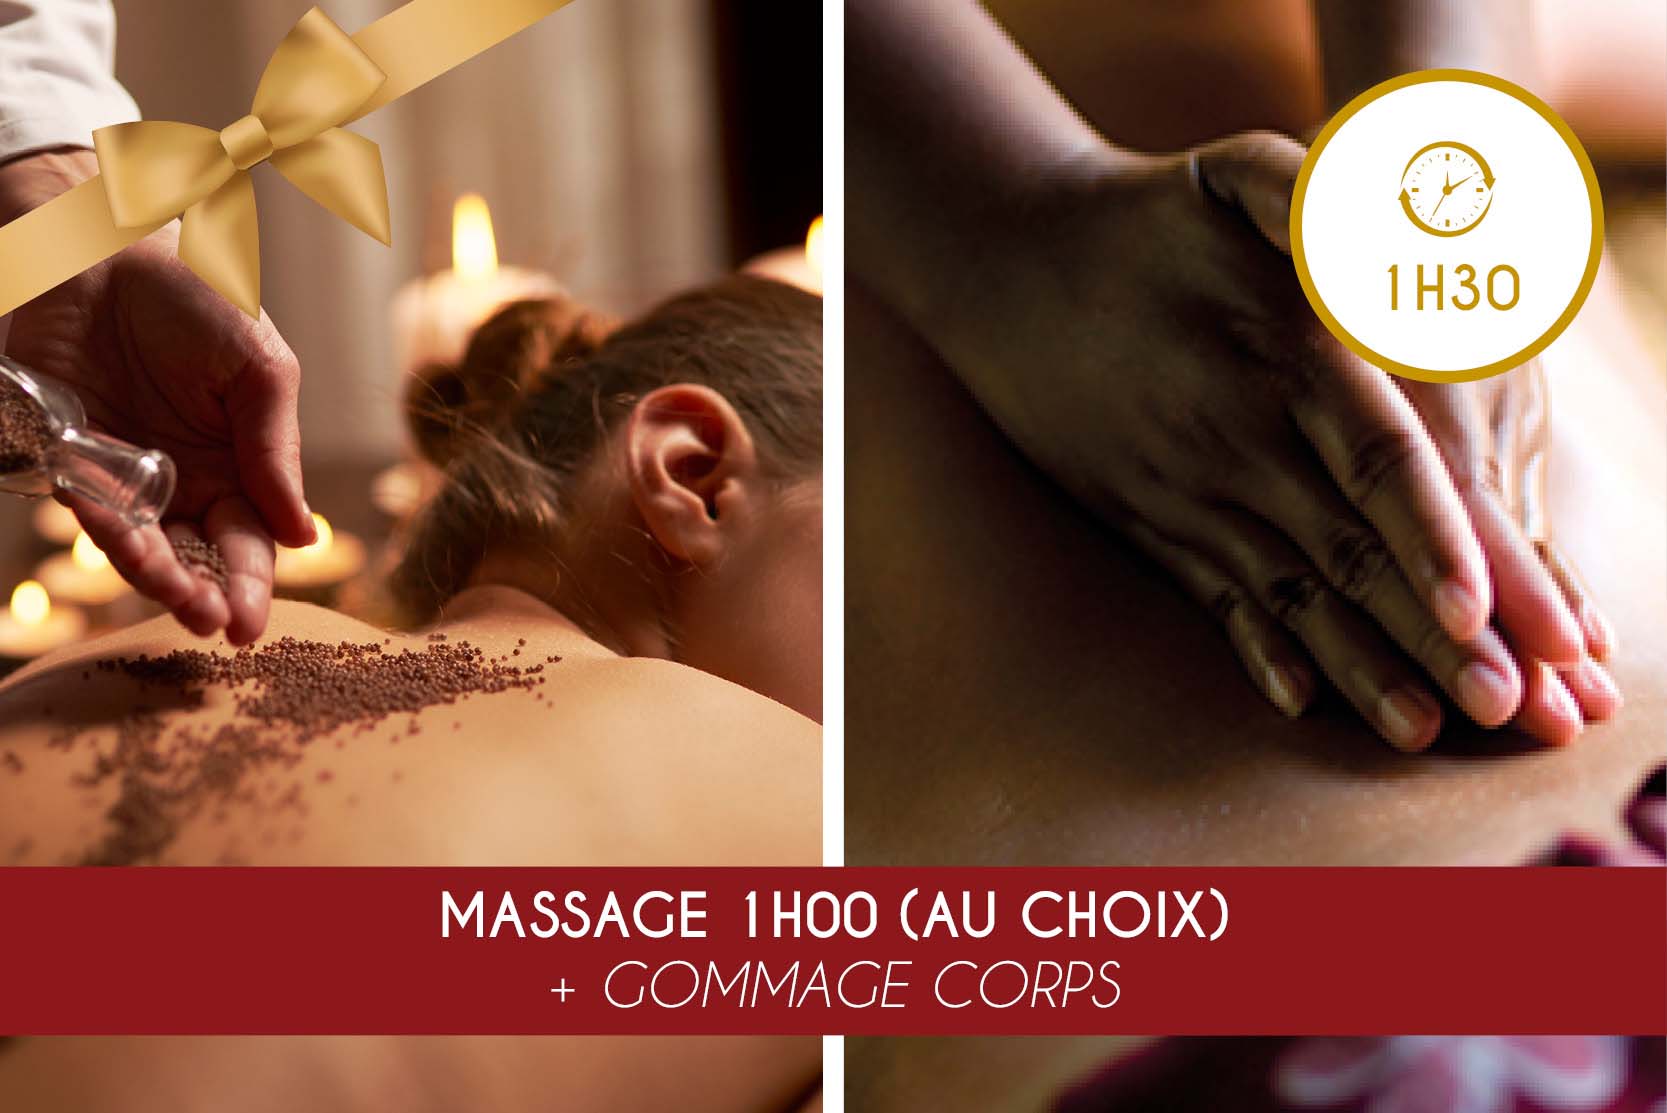 Massage 1h00 (au choix) + Gommage Corps